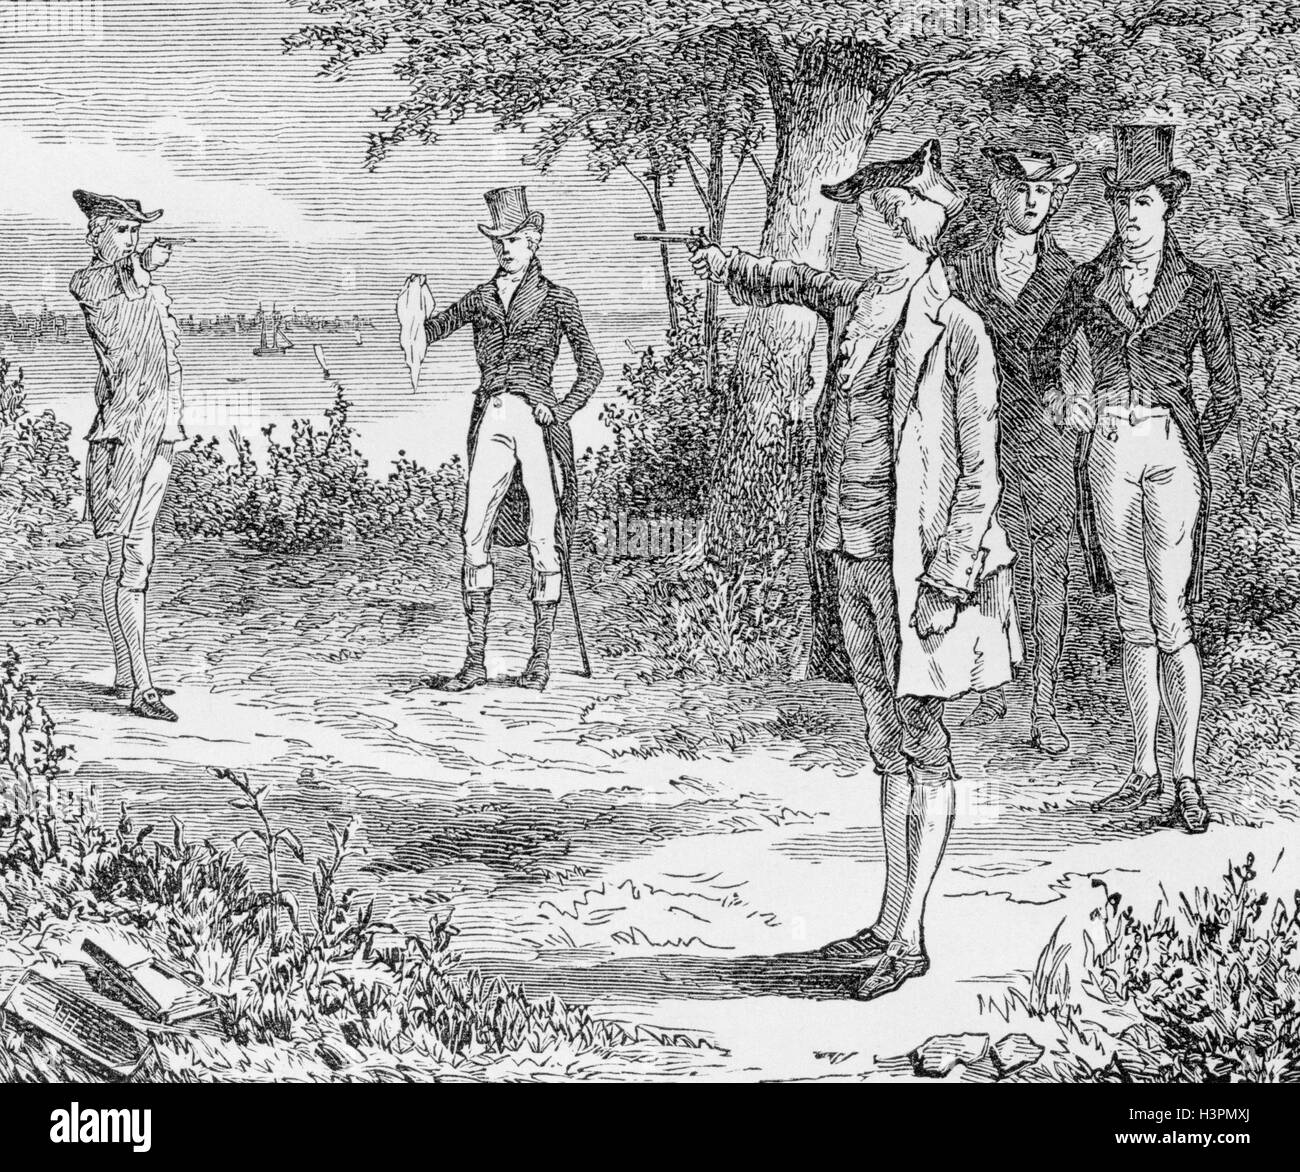 1800s DUEL BETWEEN ALEXANDER HAMILTON  AARON BURR JULY 11 1804 IN WEEHAWKEN NJ USA Stock Photo